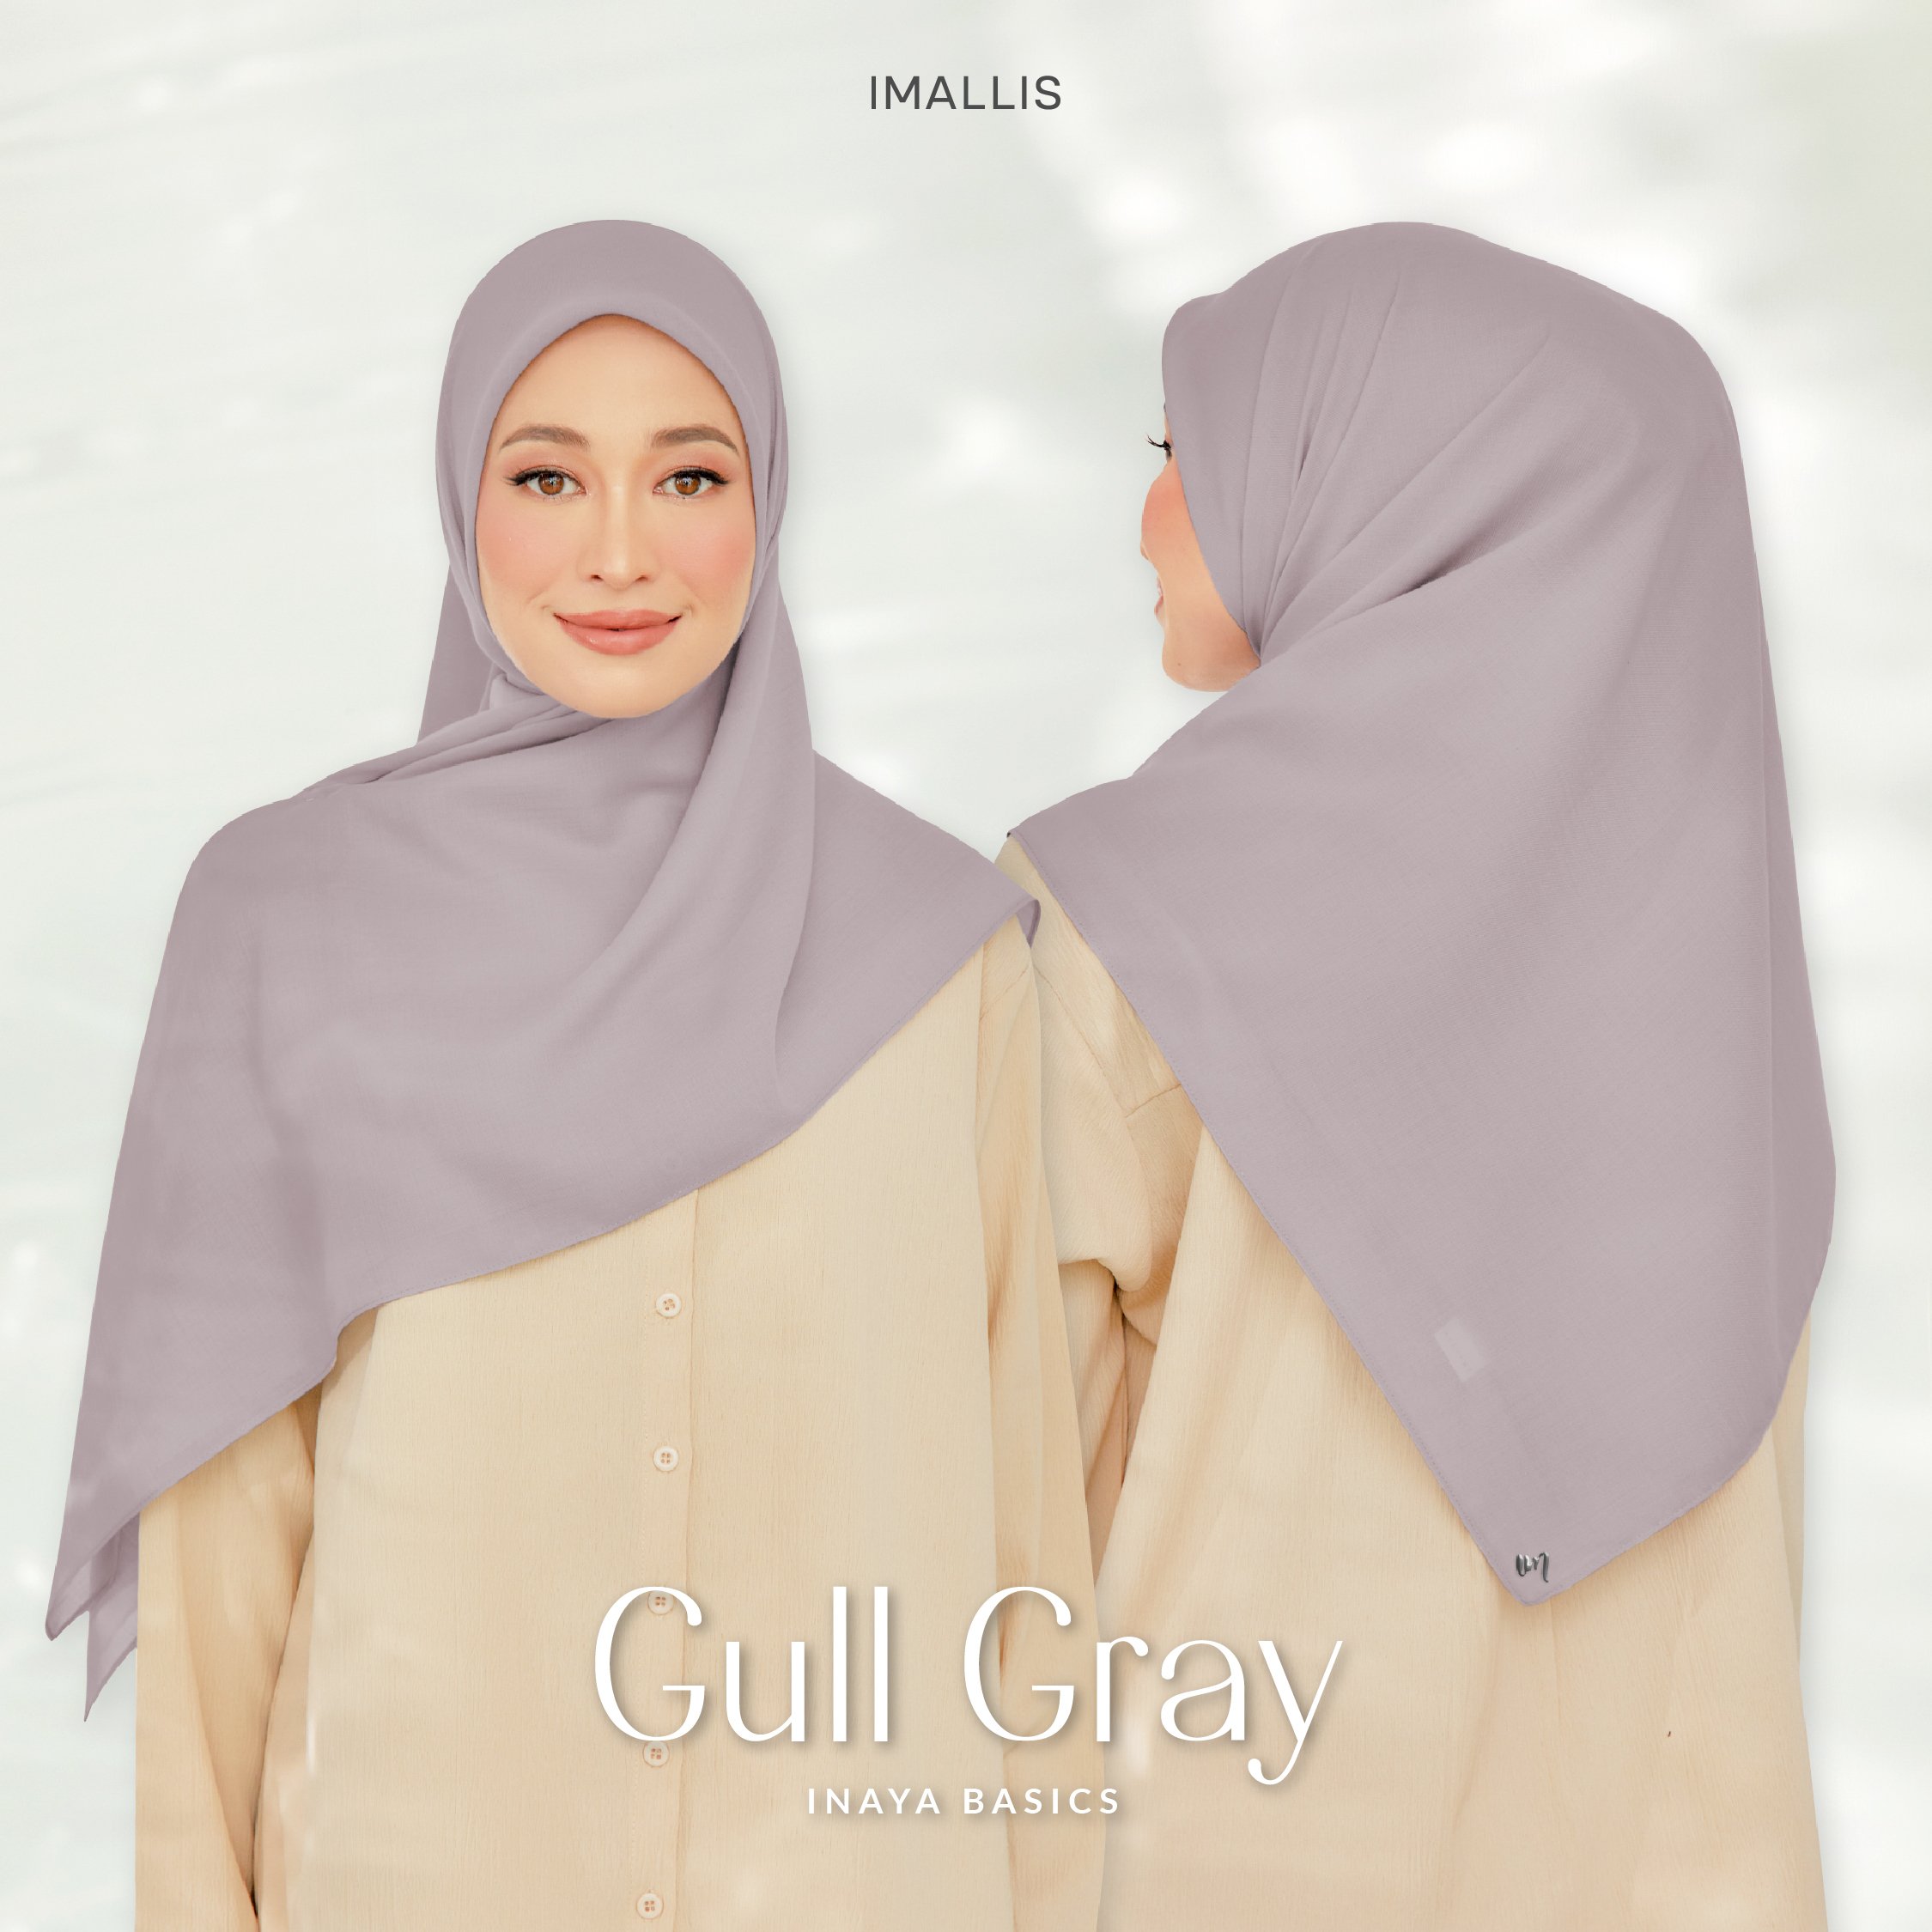 Inaya Basics - Gull Gray-01